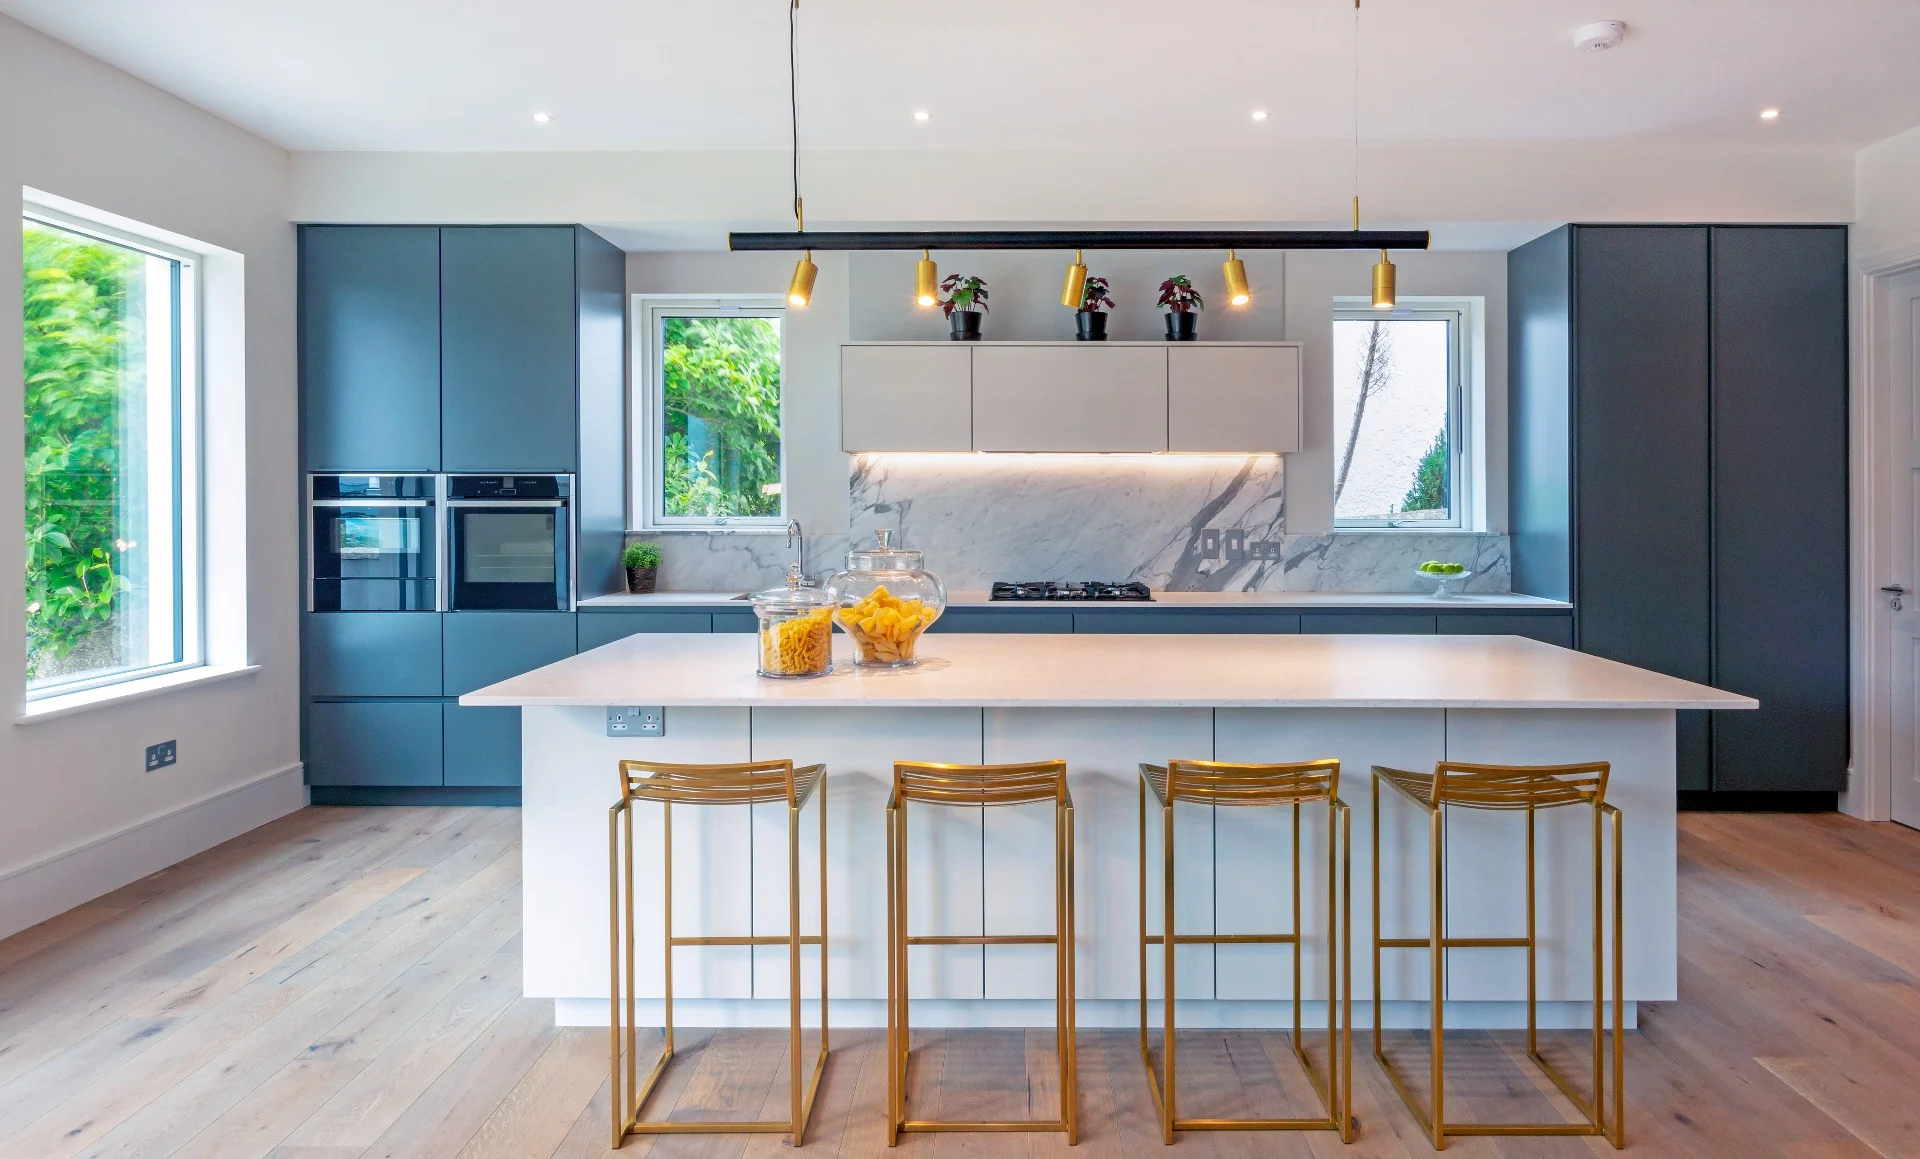 Cozinha moderna apresentando camadas de luz com detalhes suspensos e iluminação natural para criar um espaço funcional e convidativo